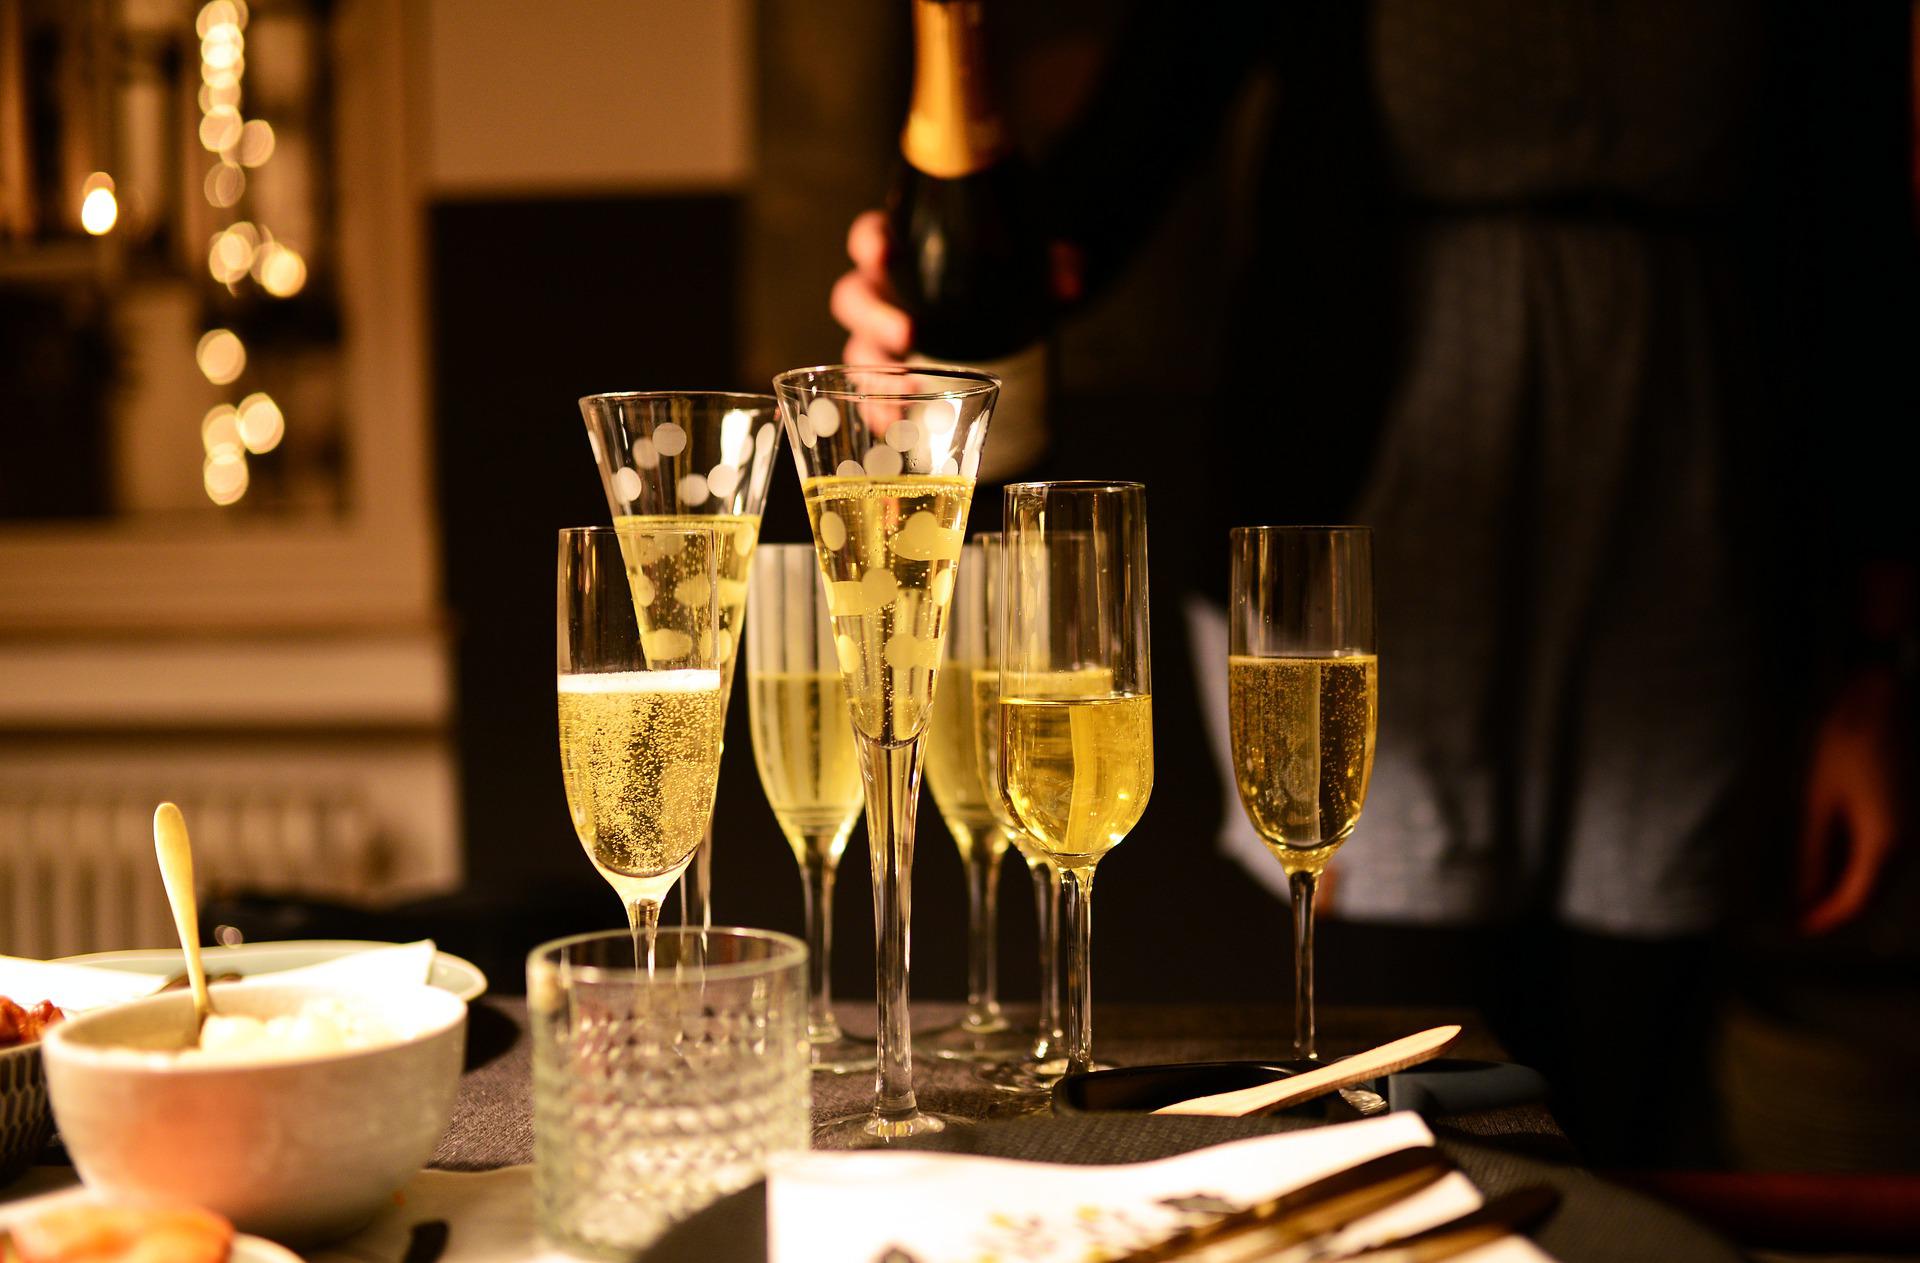 Forfait boisson/ Champagne food Pour accompagner votre cocktail,  le Carlton vous propose une coupe de champagne à l’arrivée, deux consommations de vin, jus de fruits, eaux minérales